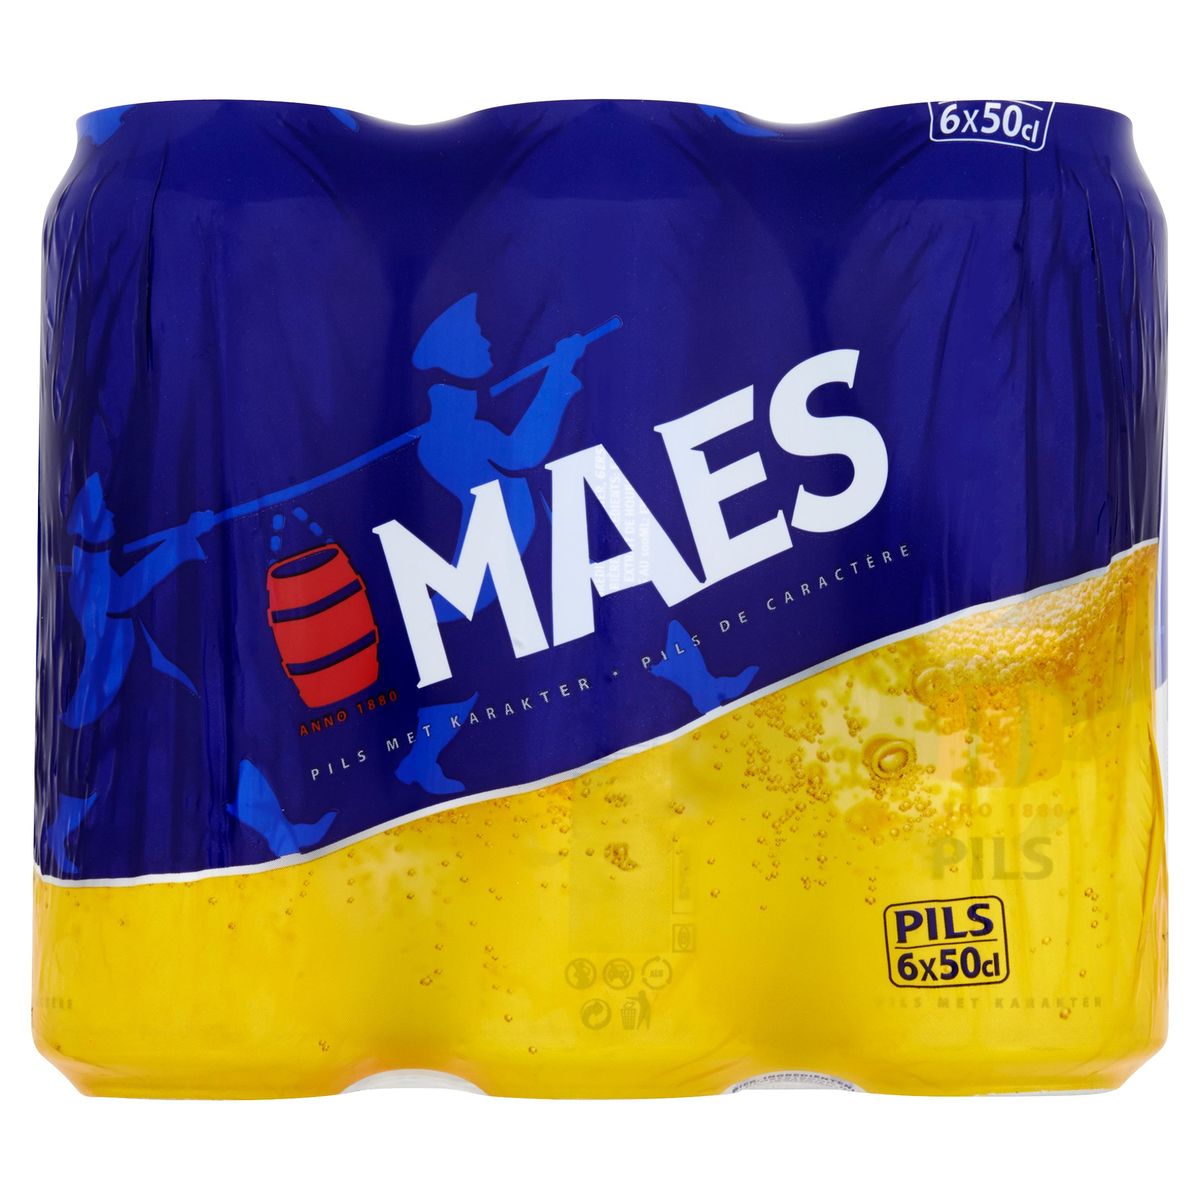 Maes Blond bier Pils 5.2% ALC 6 x 50 cl Blik